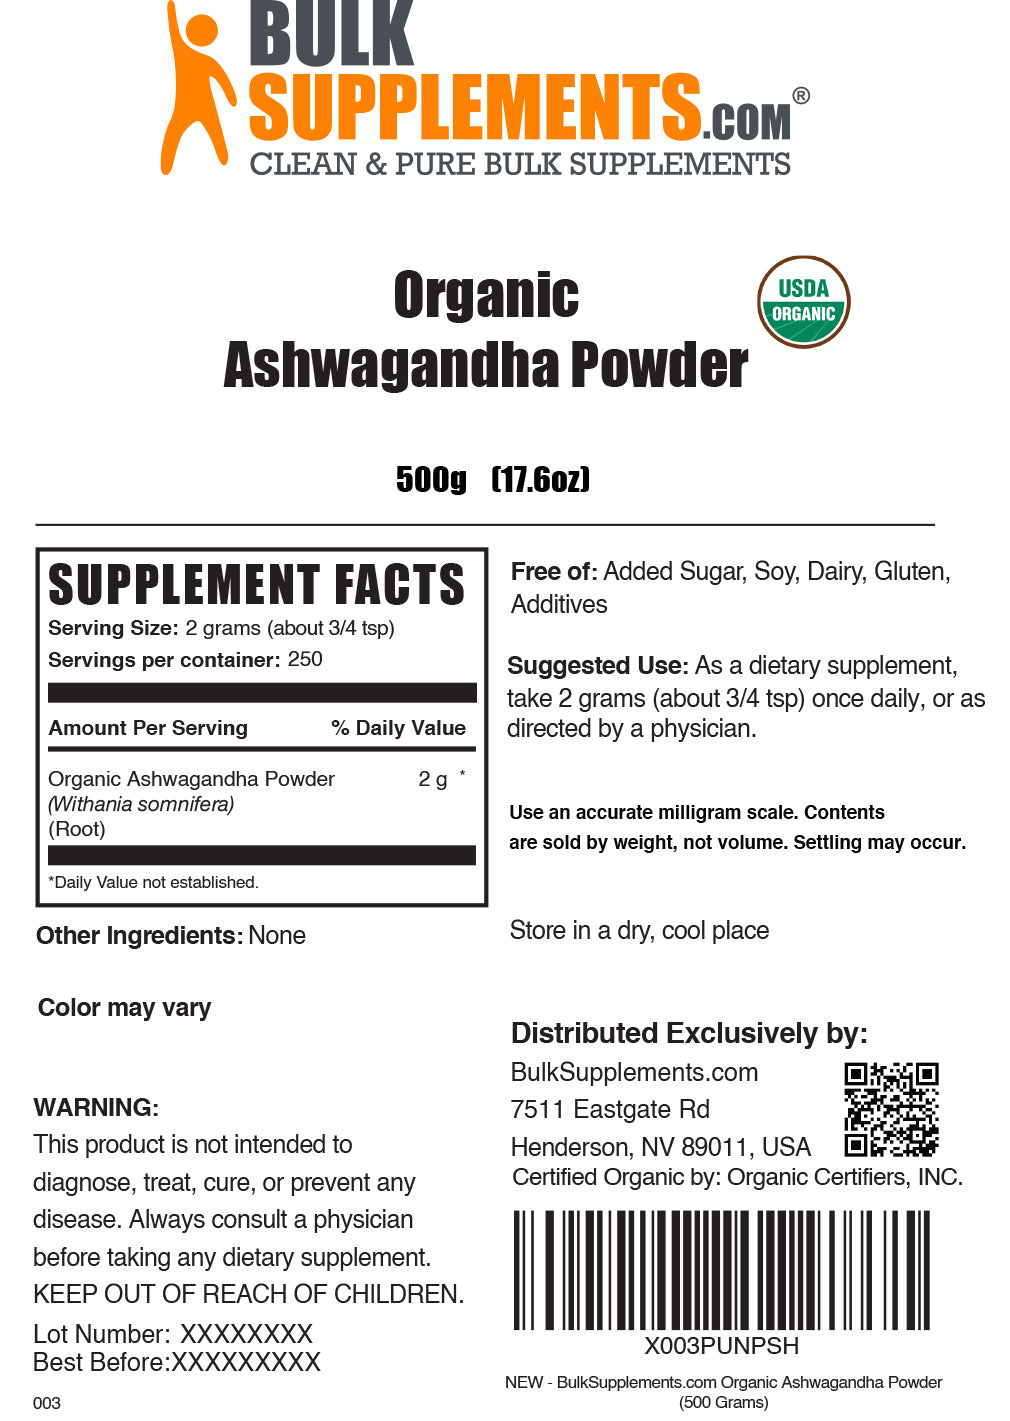 Organic Ashwagandha Powder label 500g